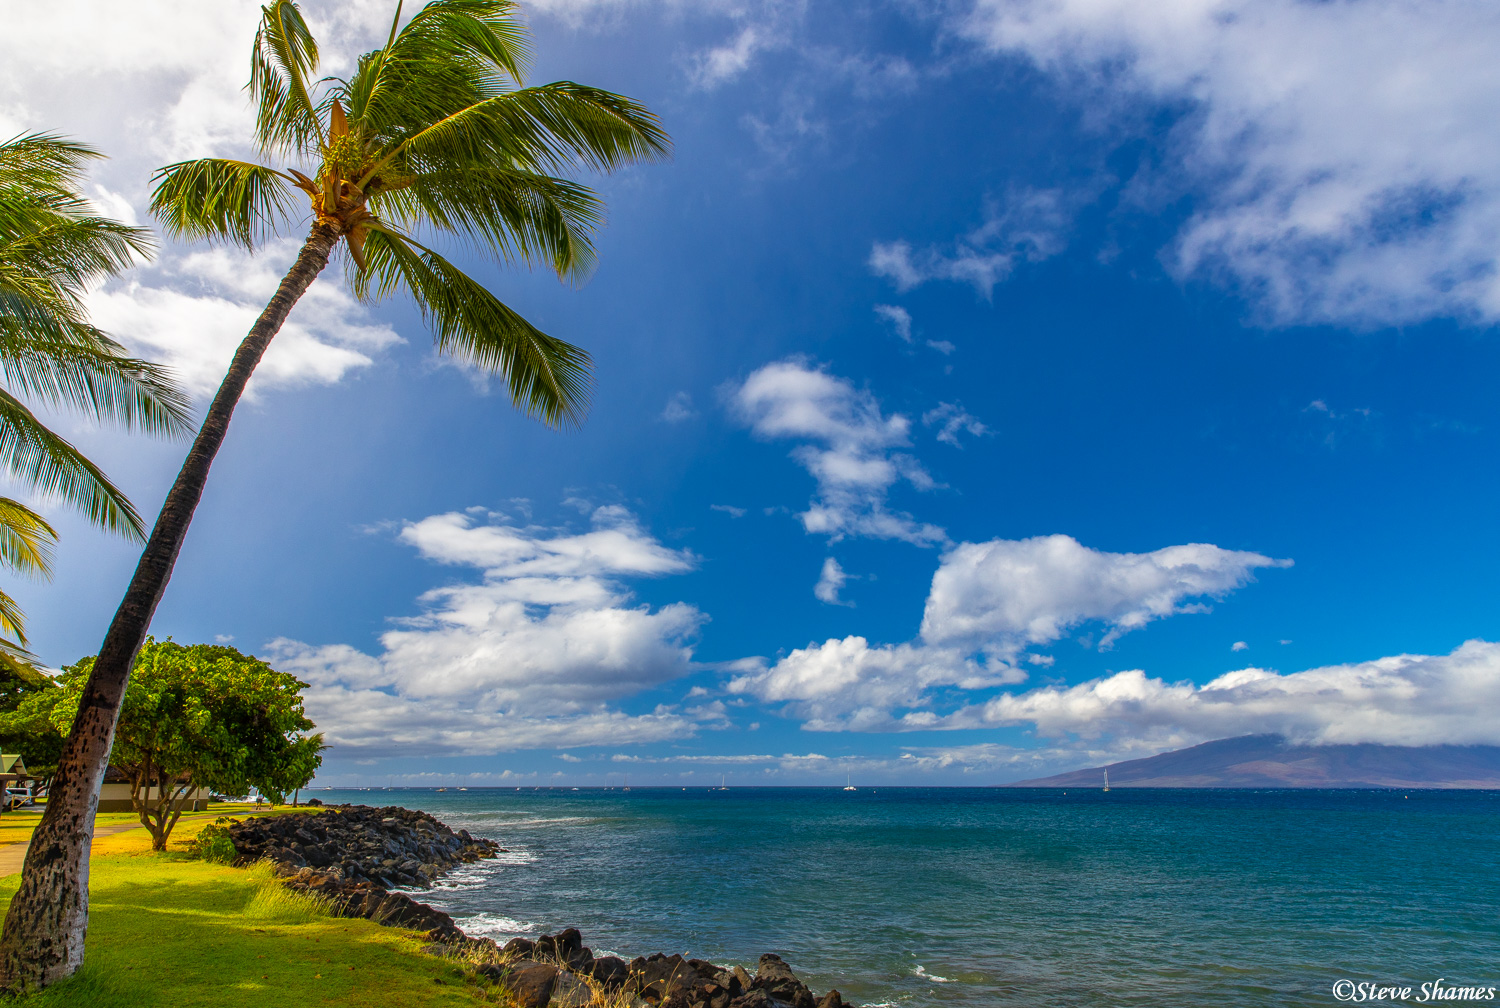 Another Hawaiian Island scene, at Hanakaoo Park in western Maui.